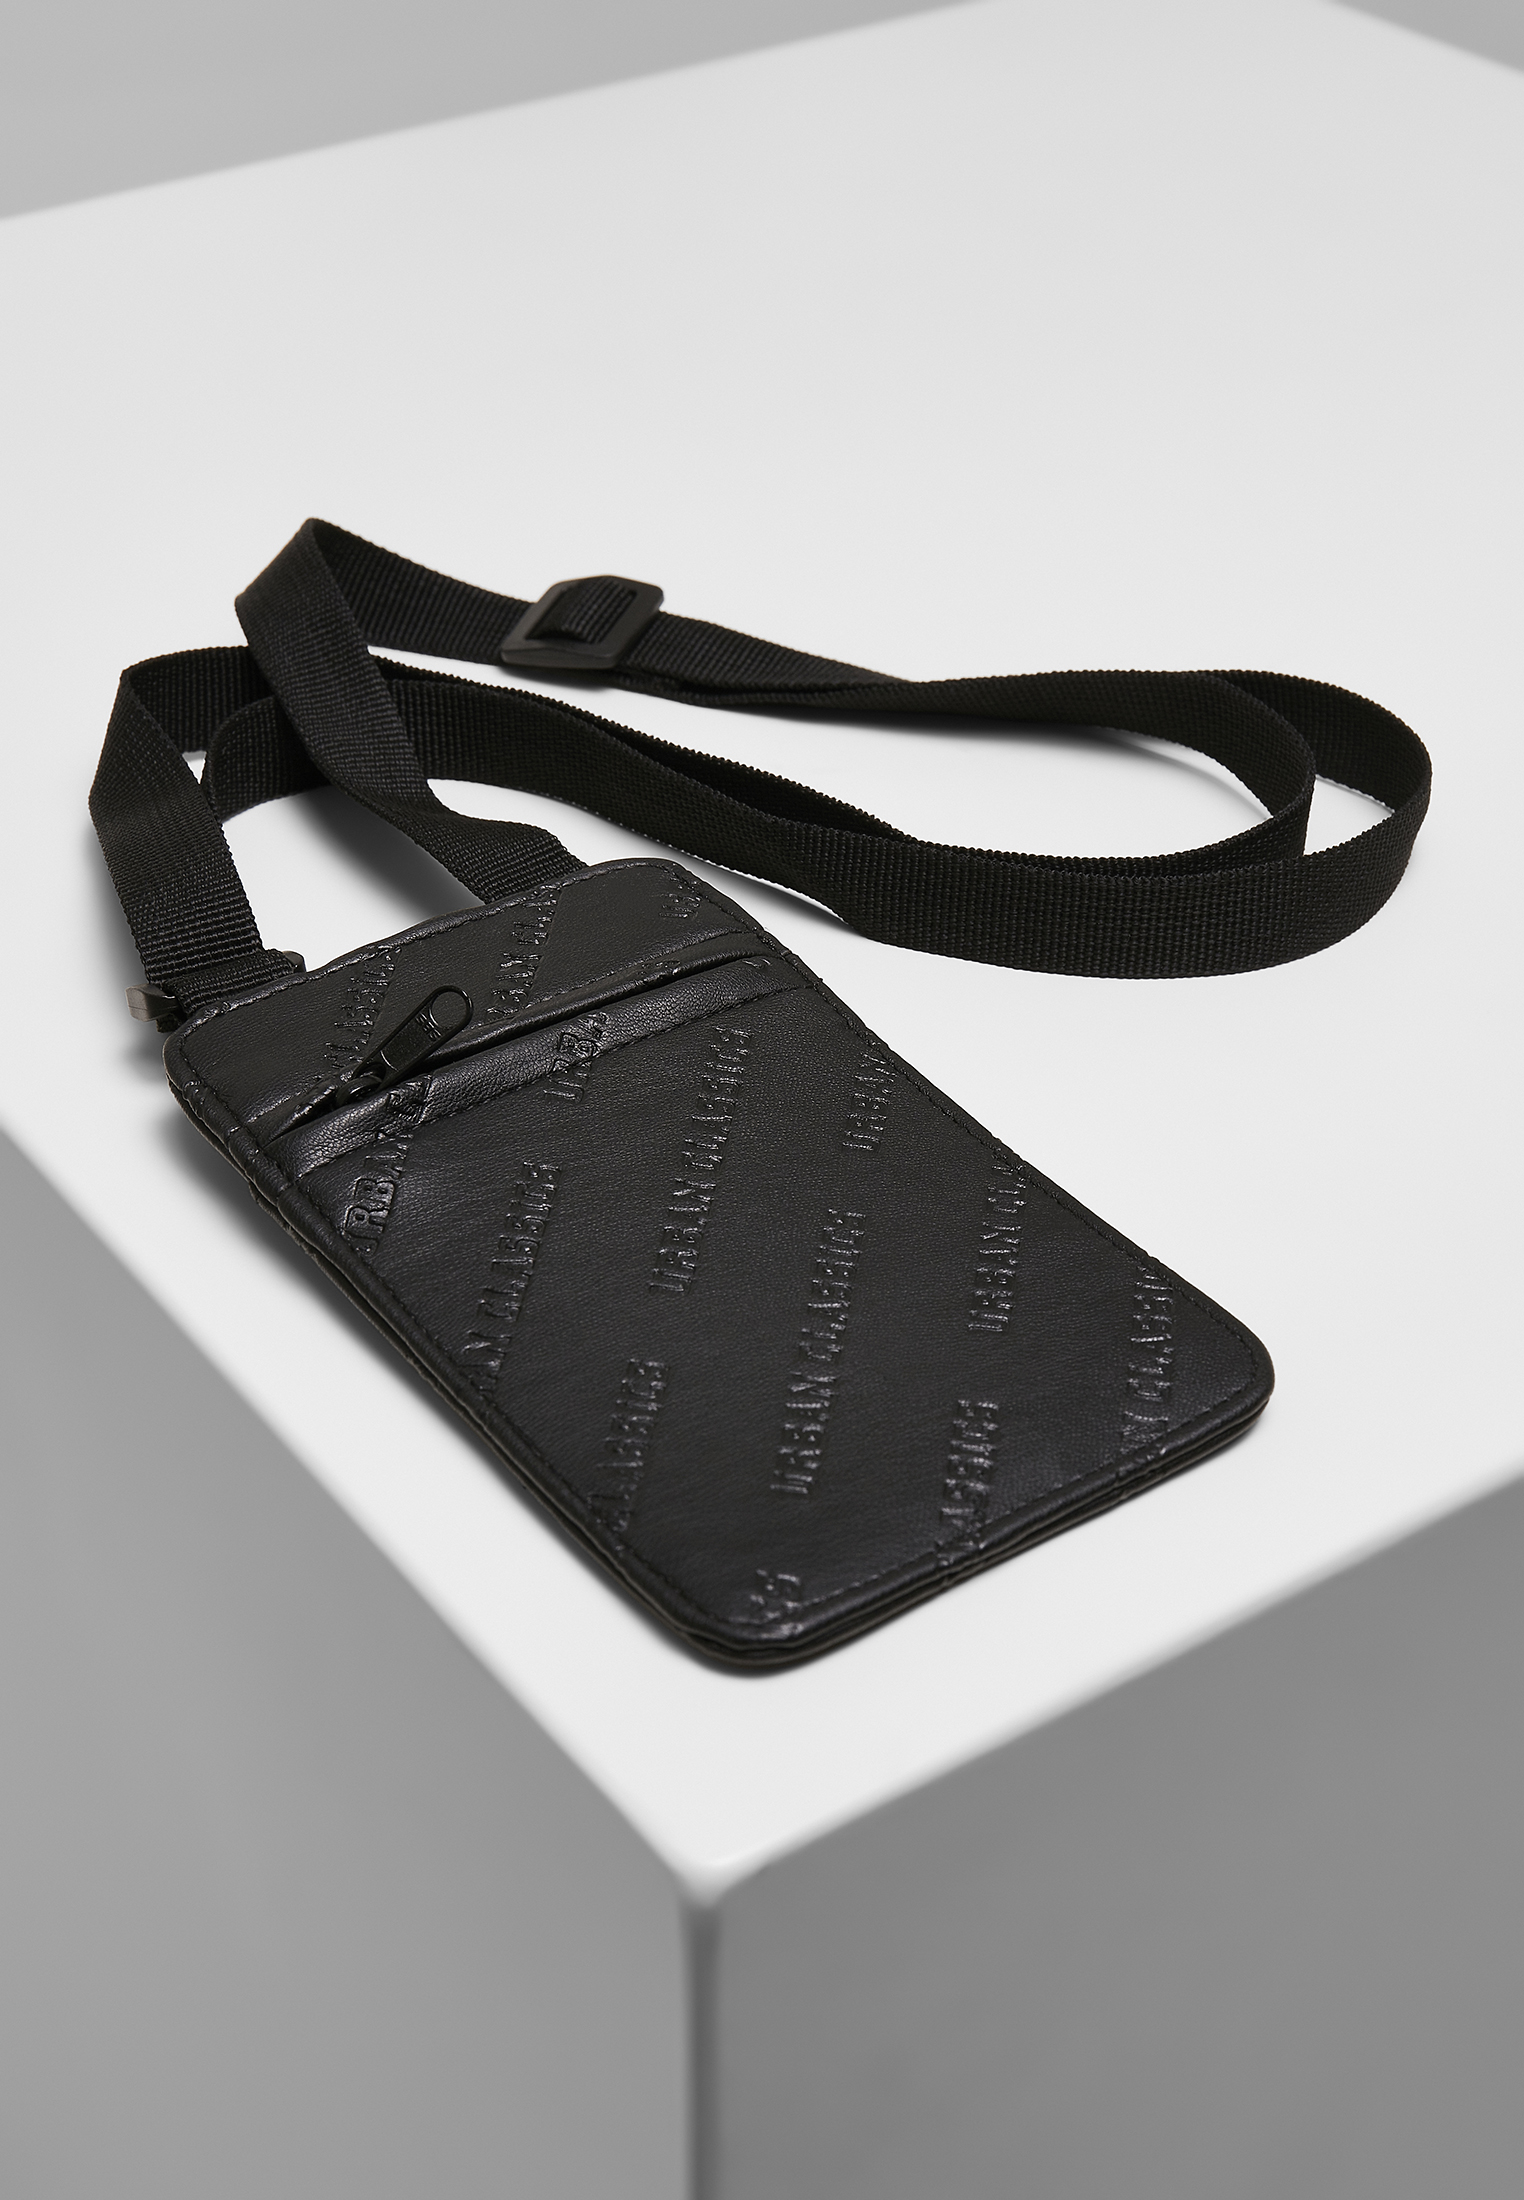 Taschen Handsfree Phonecase With Wallet in Farbe black